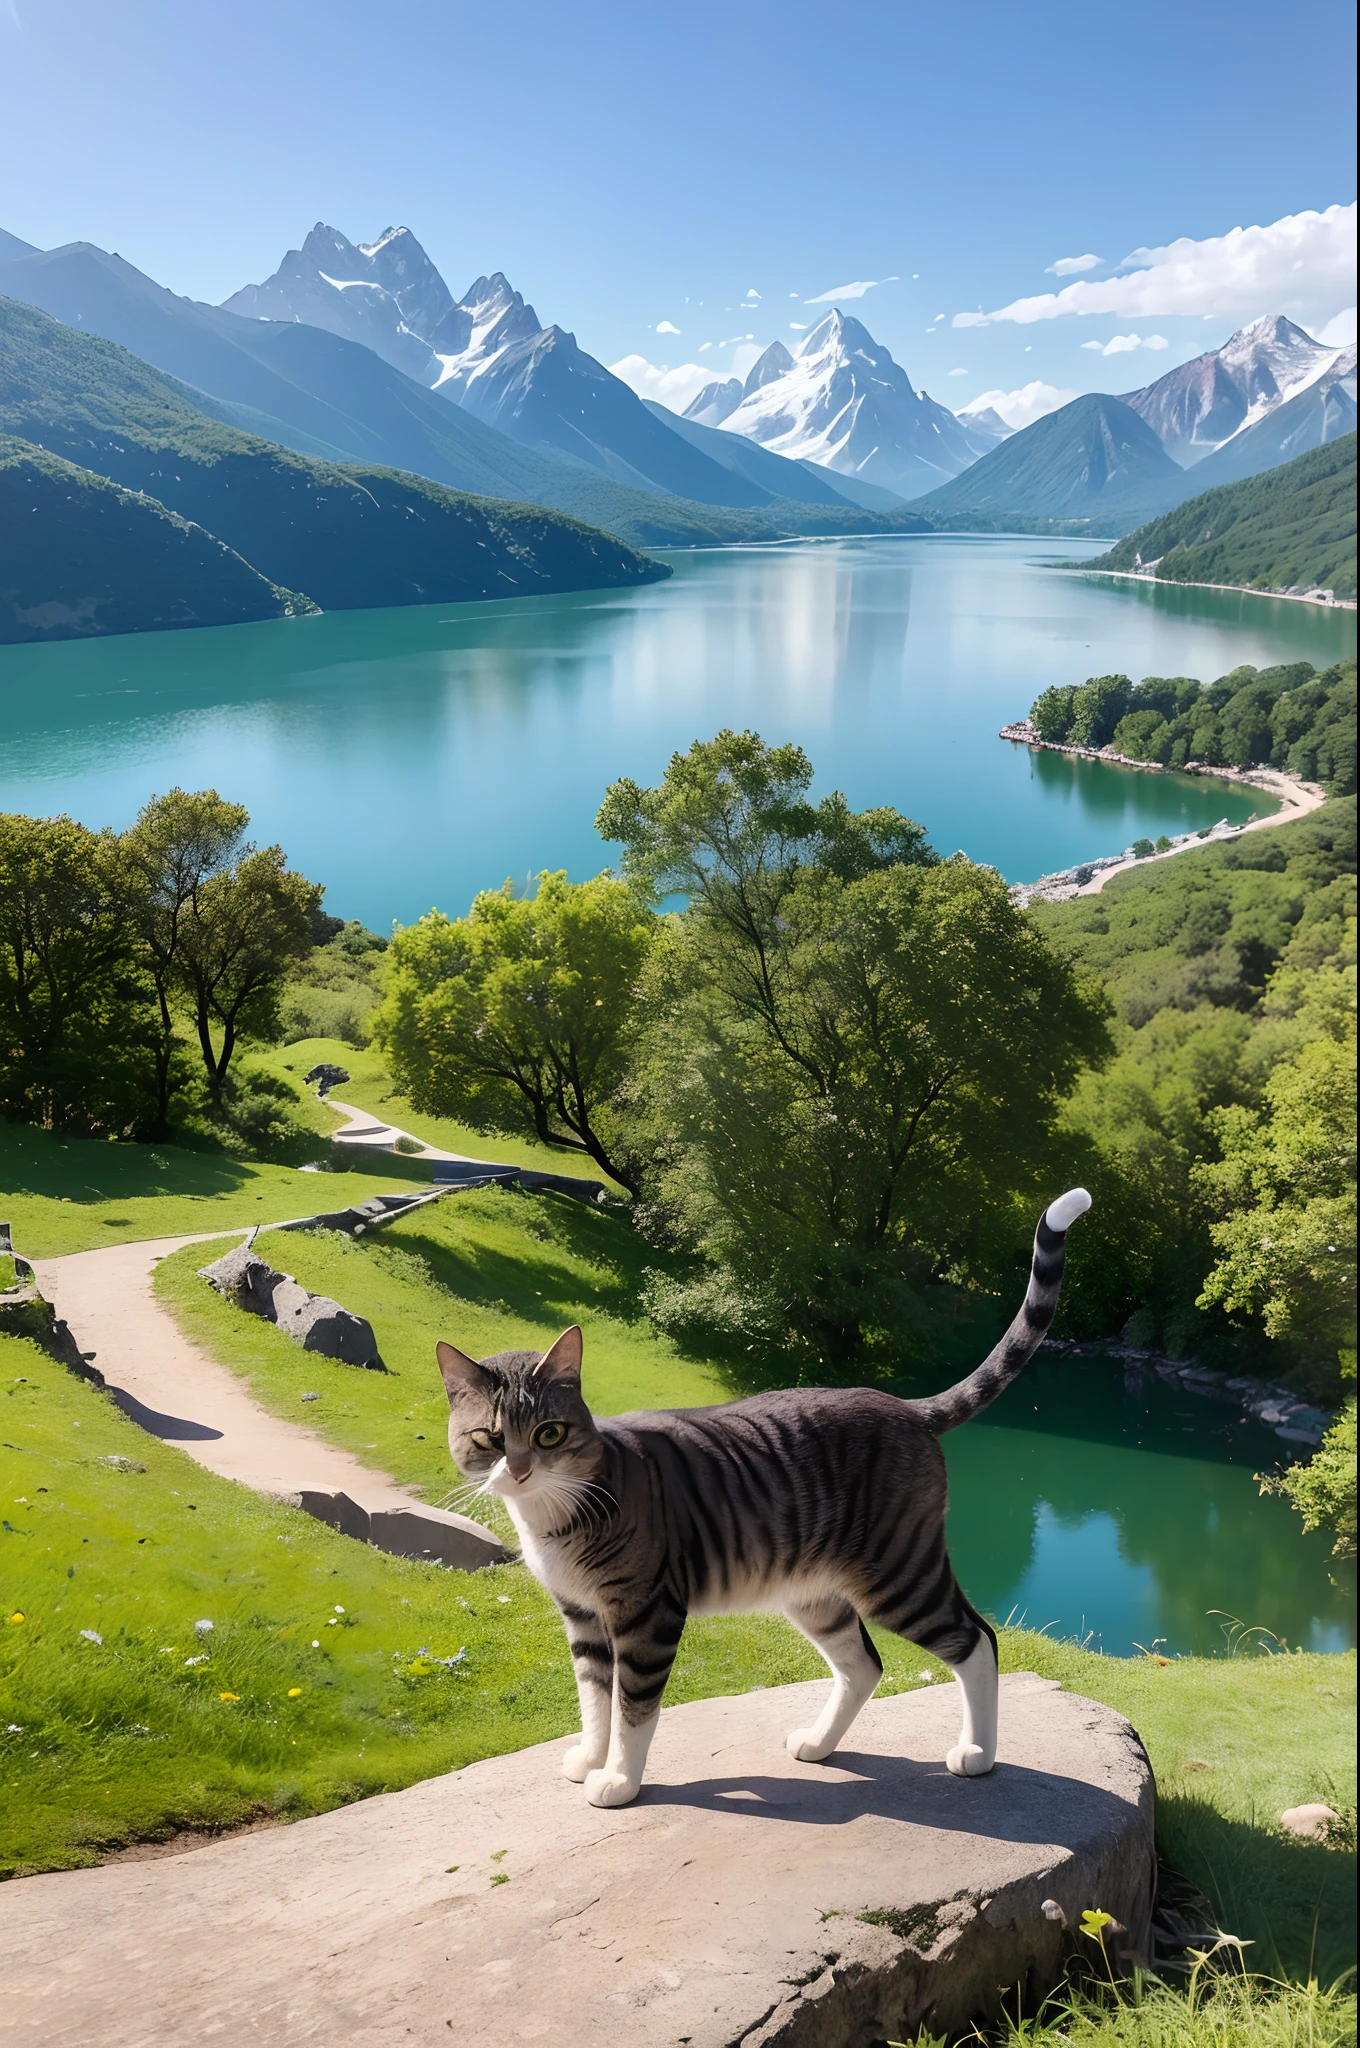 ((顶级品质、杰作、摄影写实主义:1.4、8K))、背景是卡图恩山和湖泊)、详细的阴部、娇嫩美丽的猫、美丽的风景